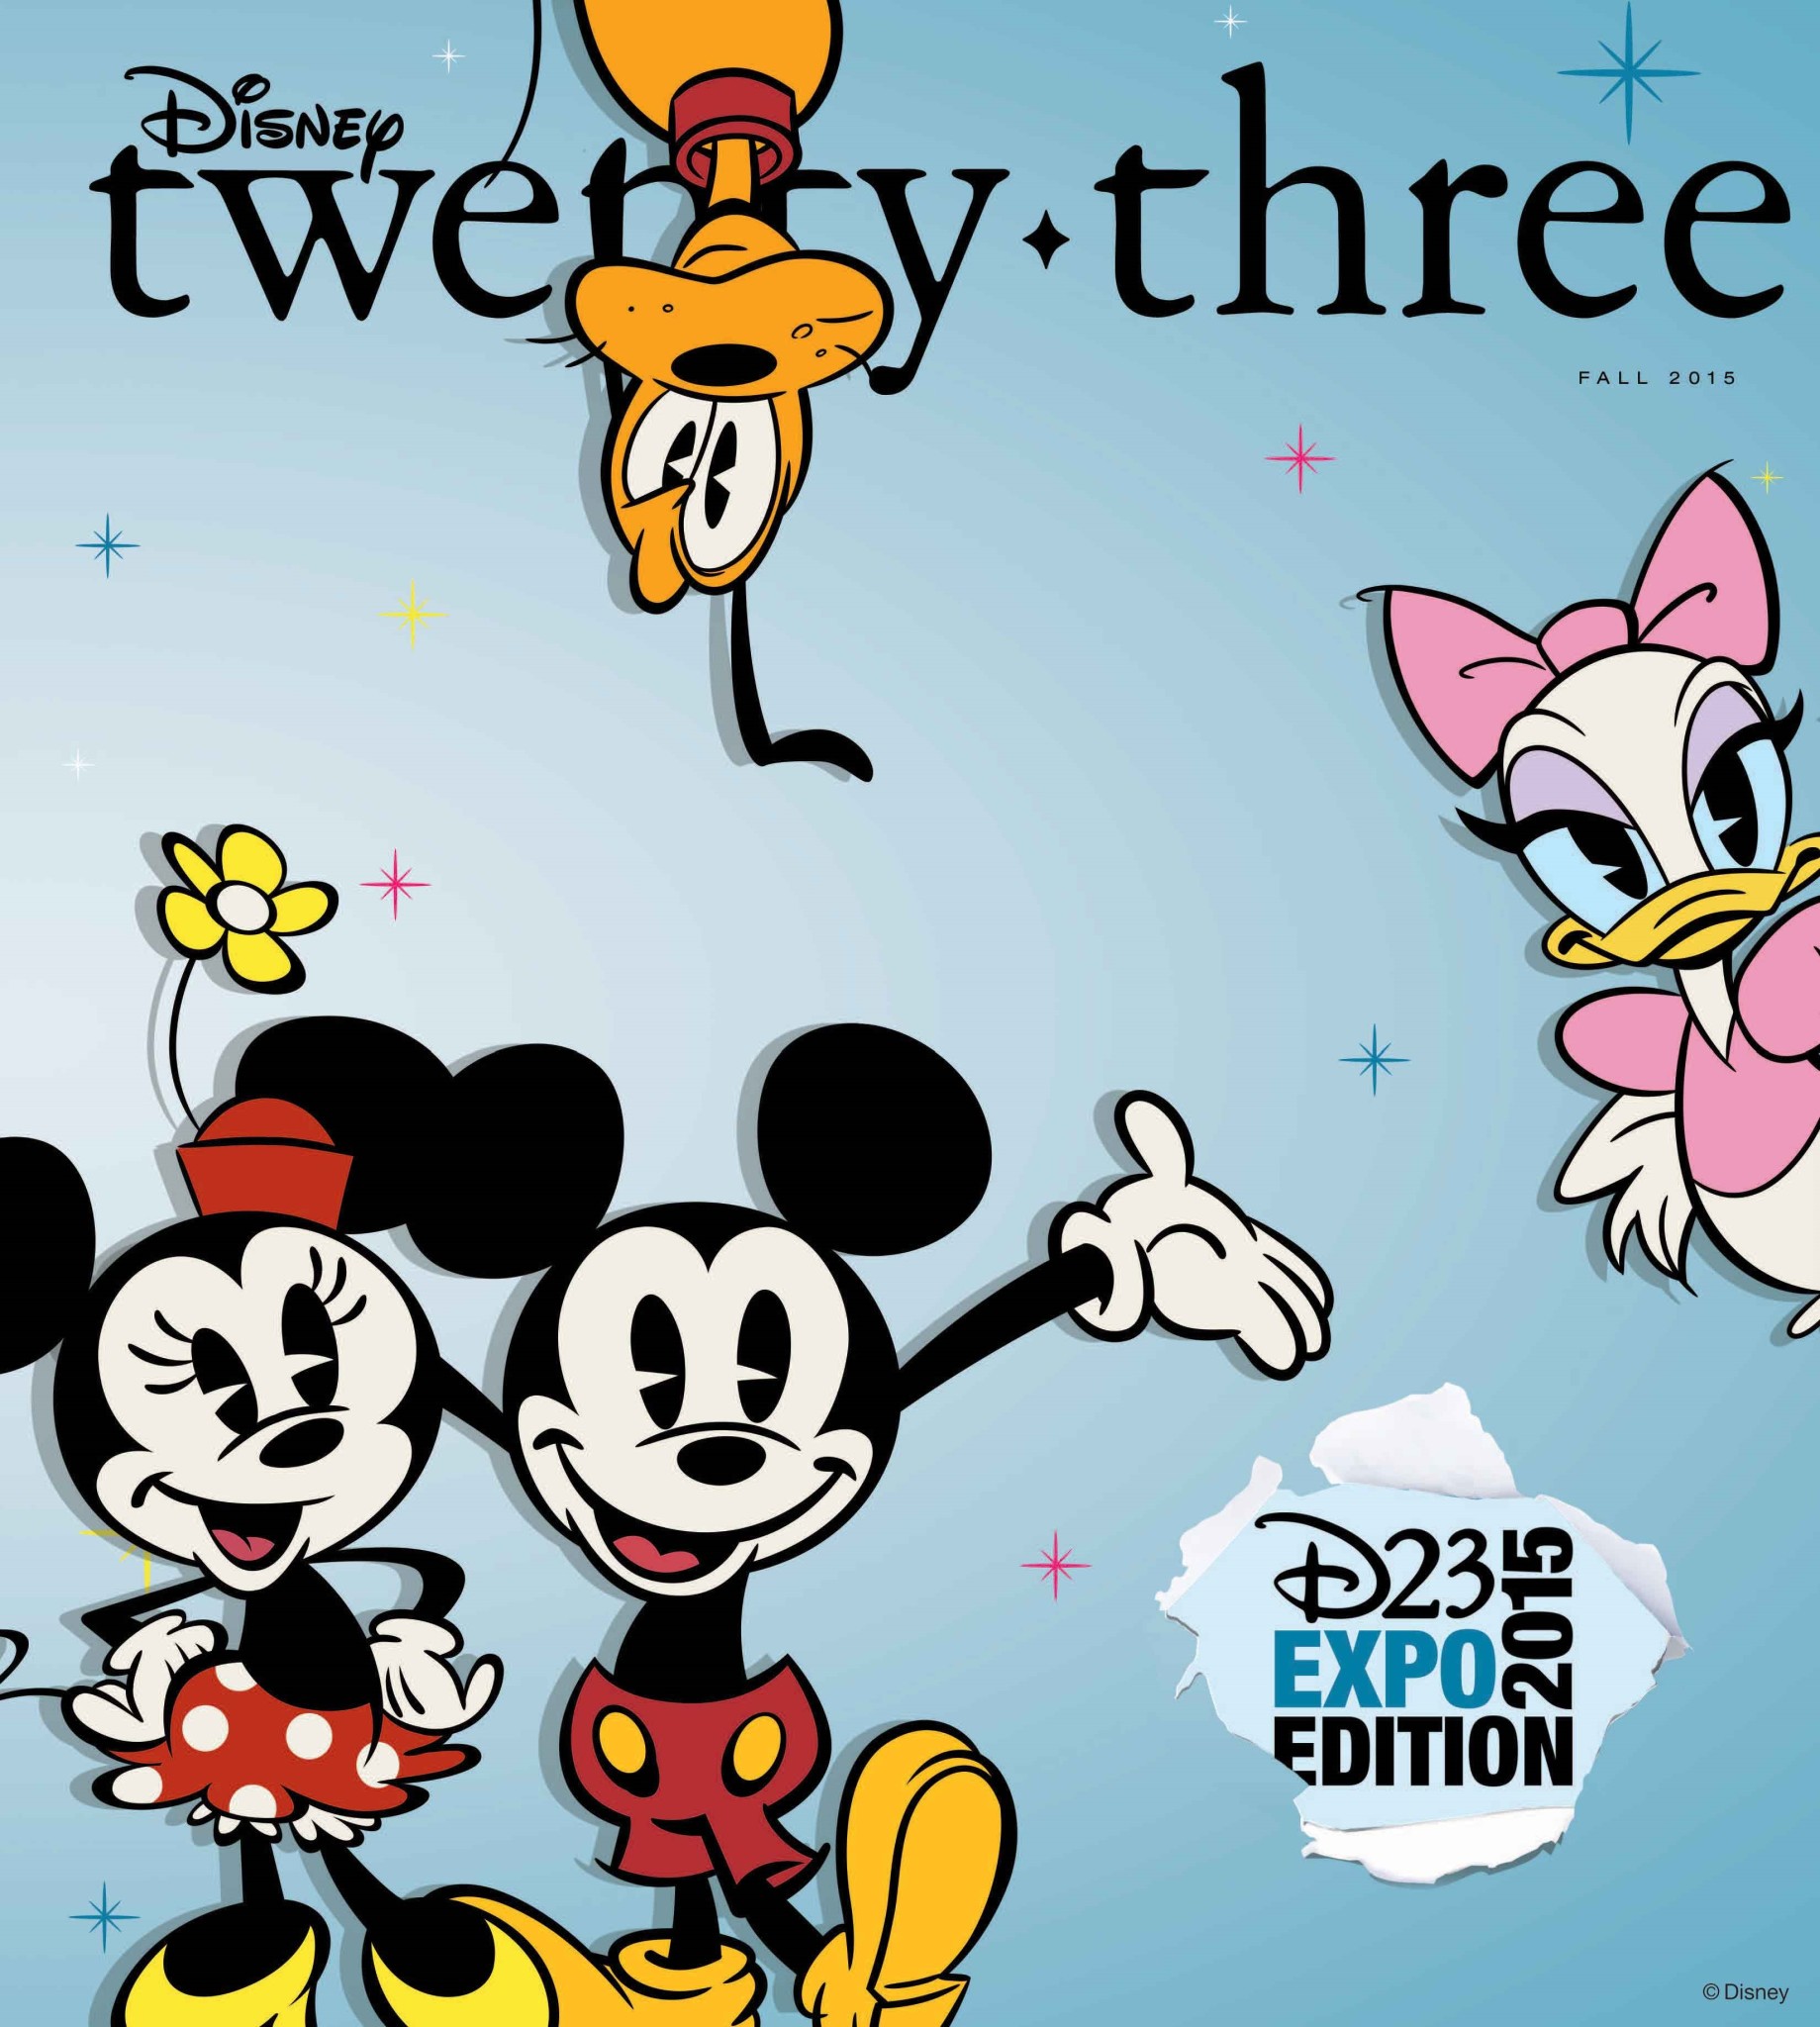 “Disney twenty-three” Fall 2015 issue